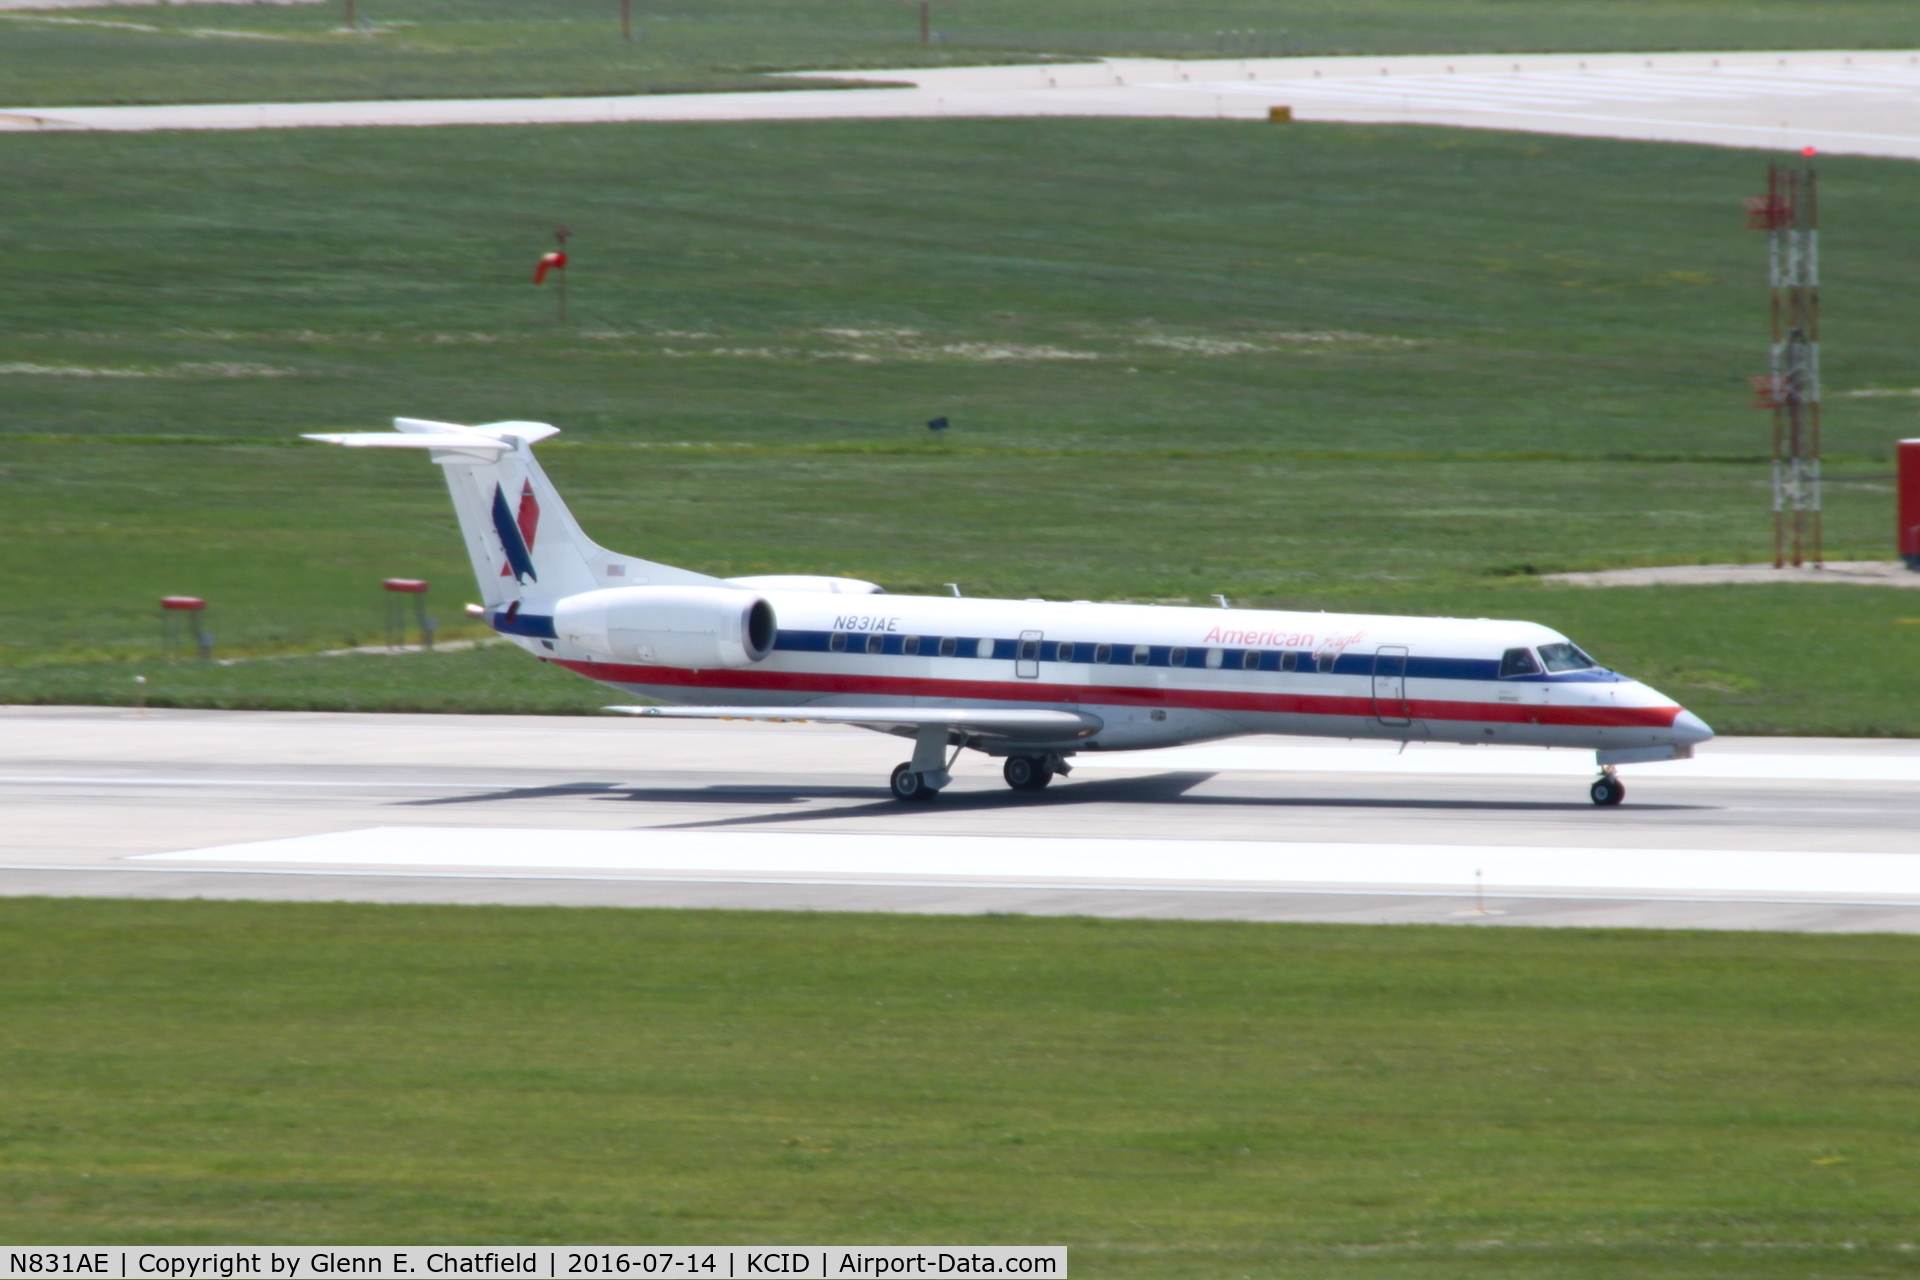 N831AE, 2002 Embraer ERJ-140LR (EMB-135KL) C/N 145616, Departing runway 27